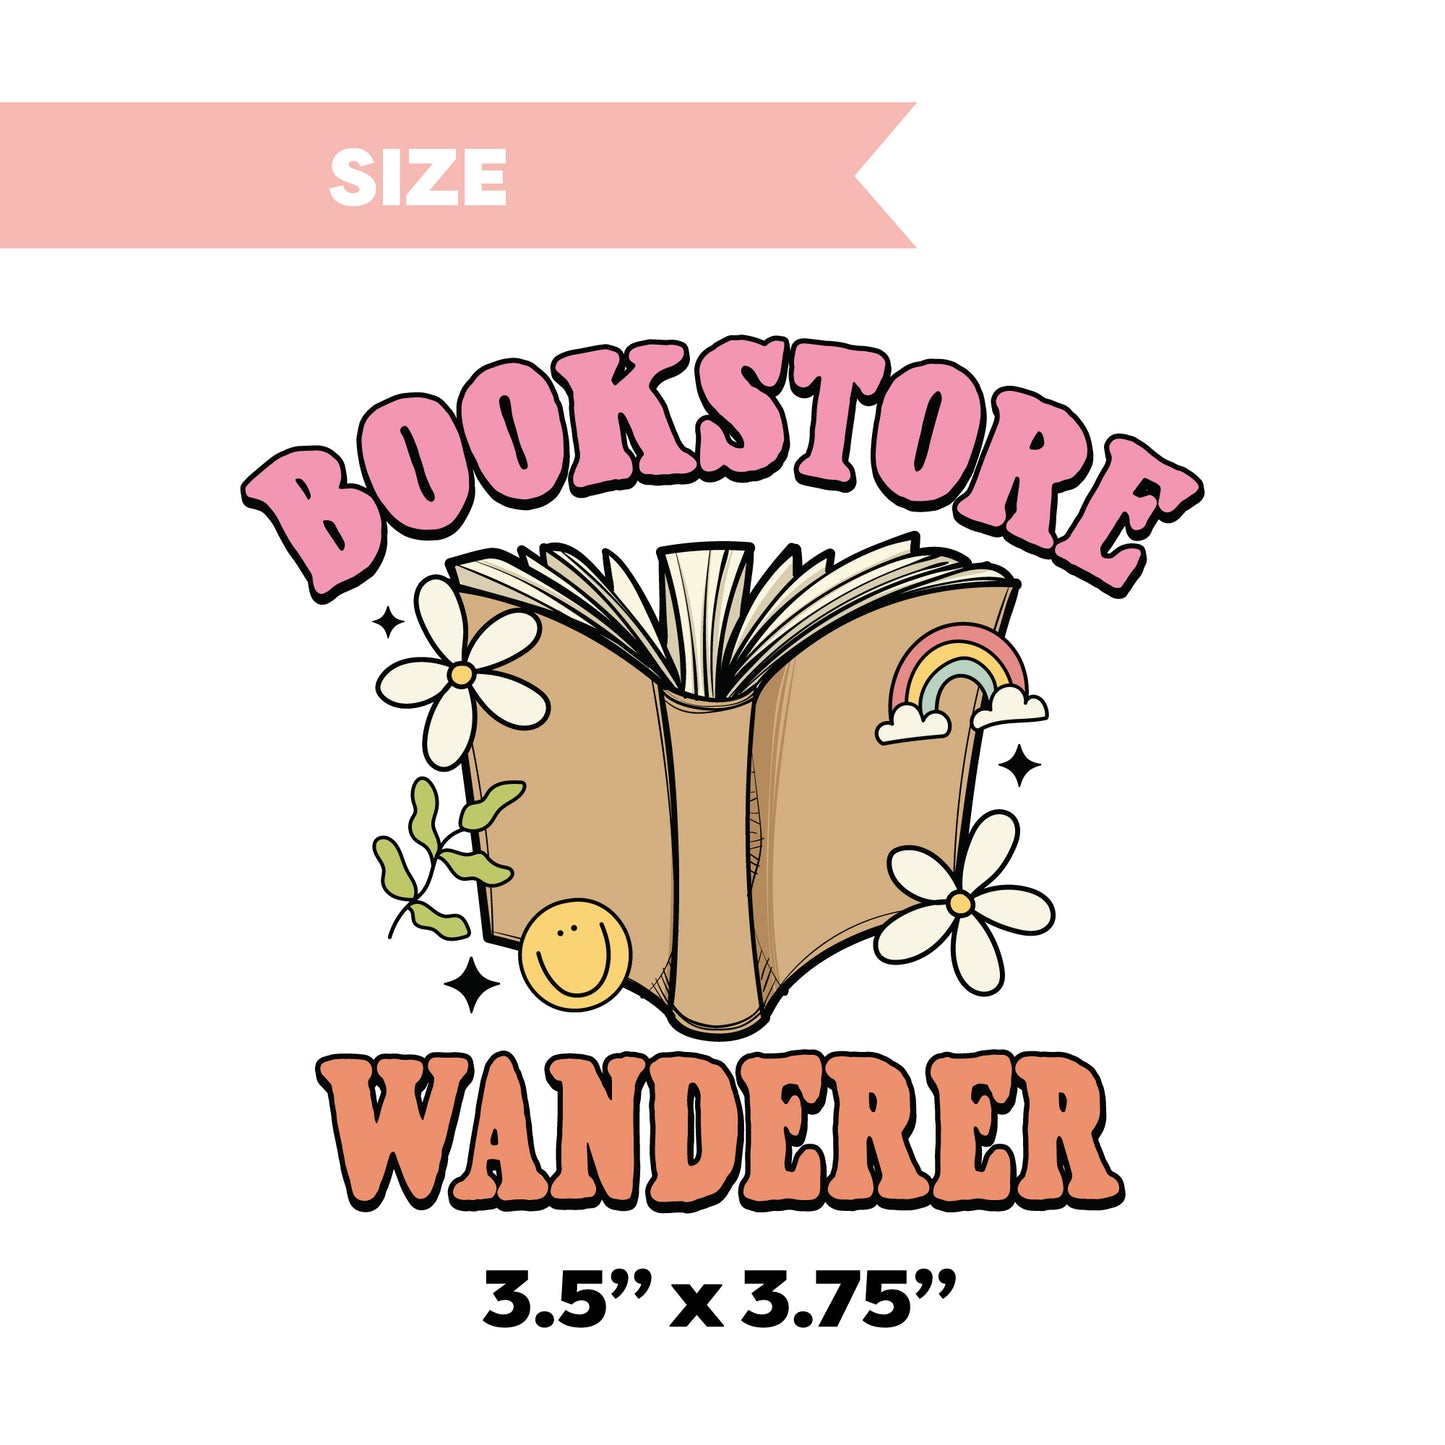 UV DTF Transfer | Bookstore Wanderer